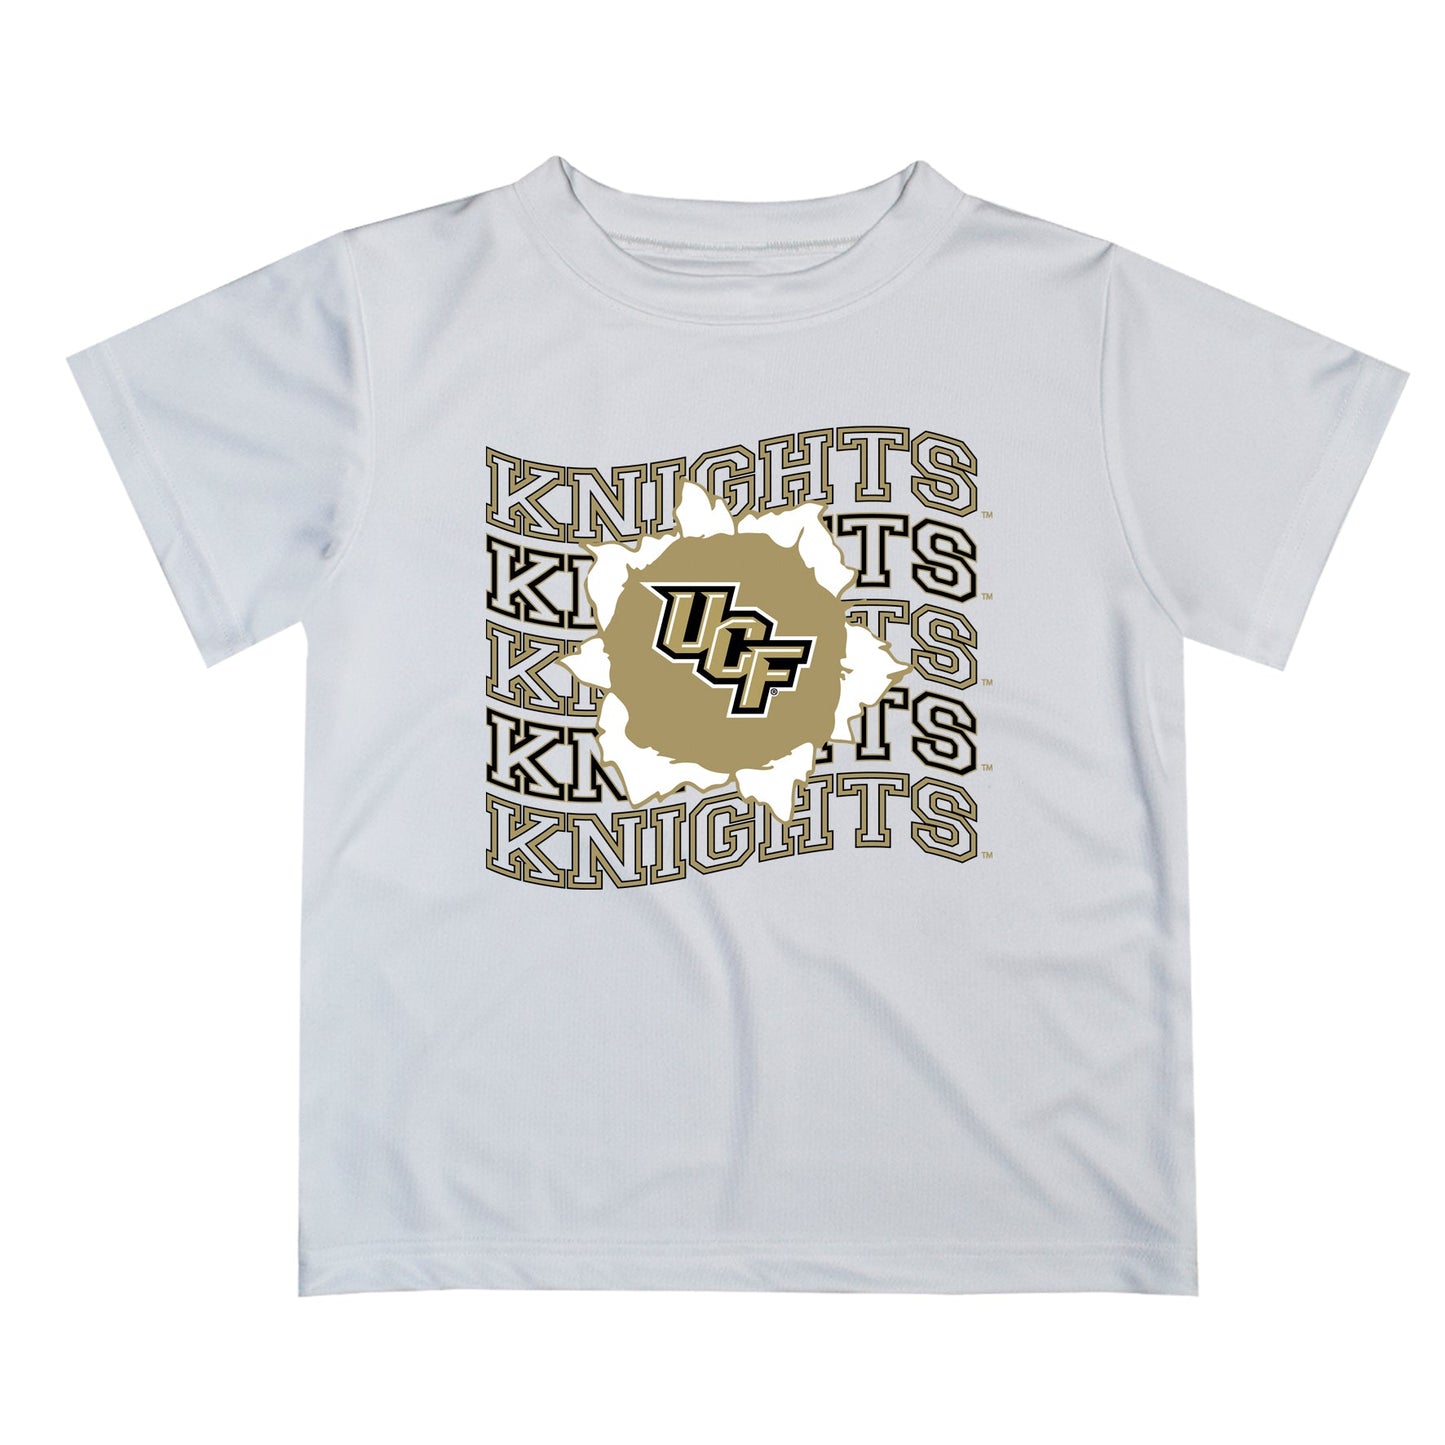 UCF Knights Vive La Fete  White Art V1 Short Sleeve Tee Shirt